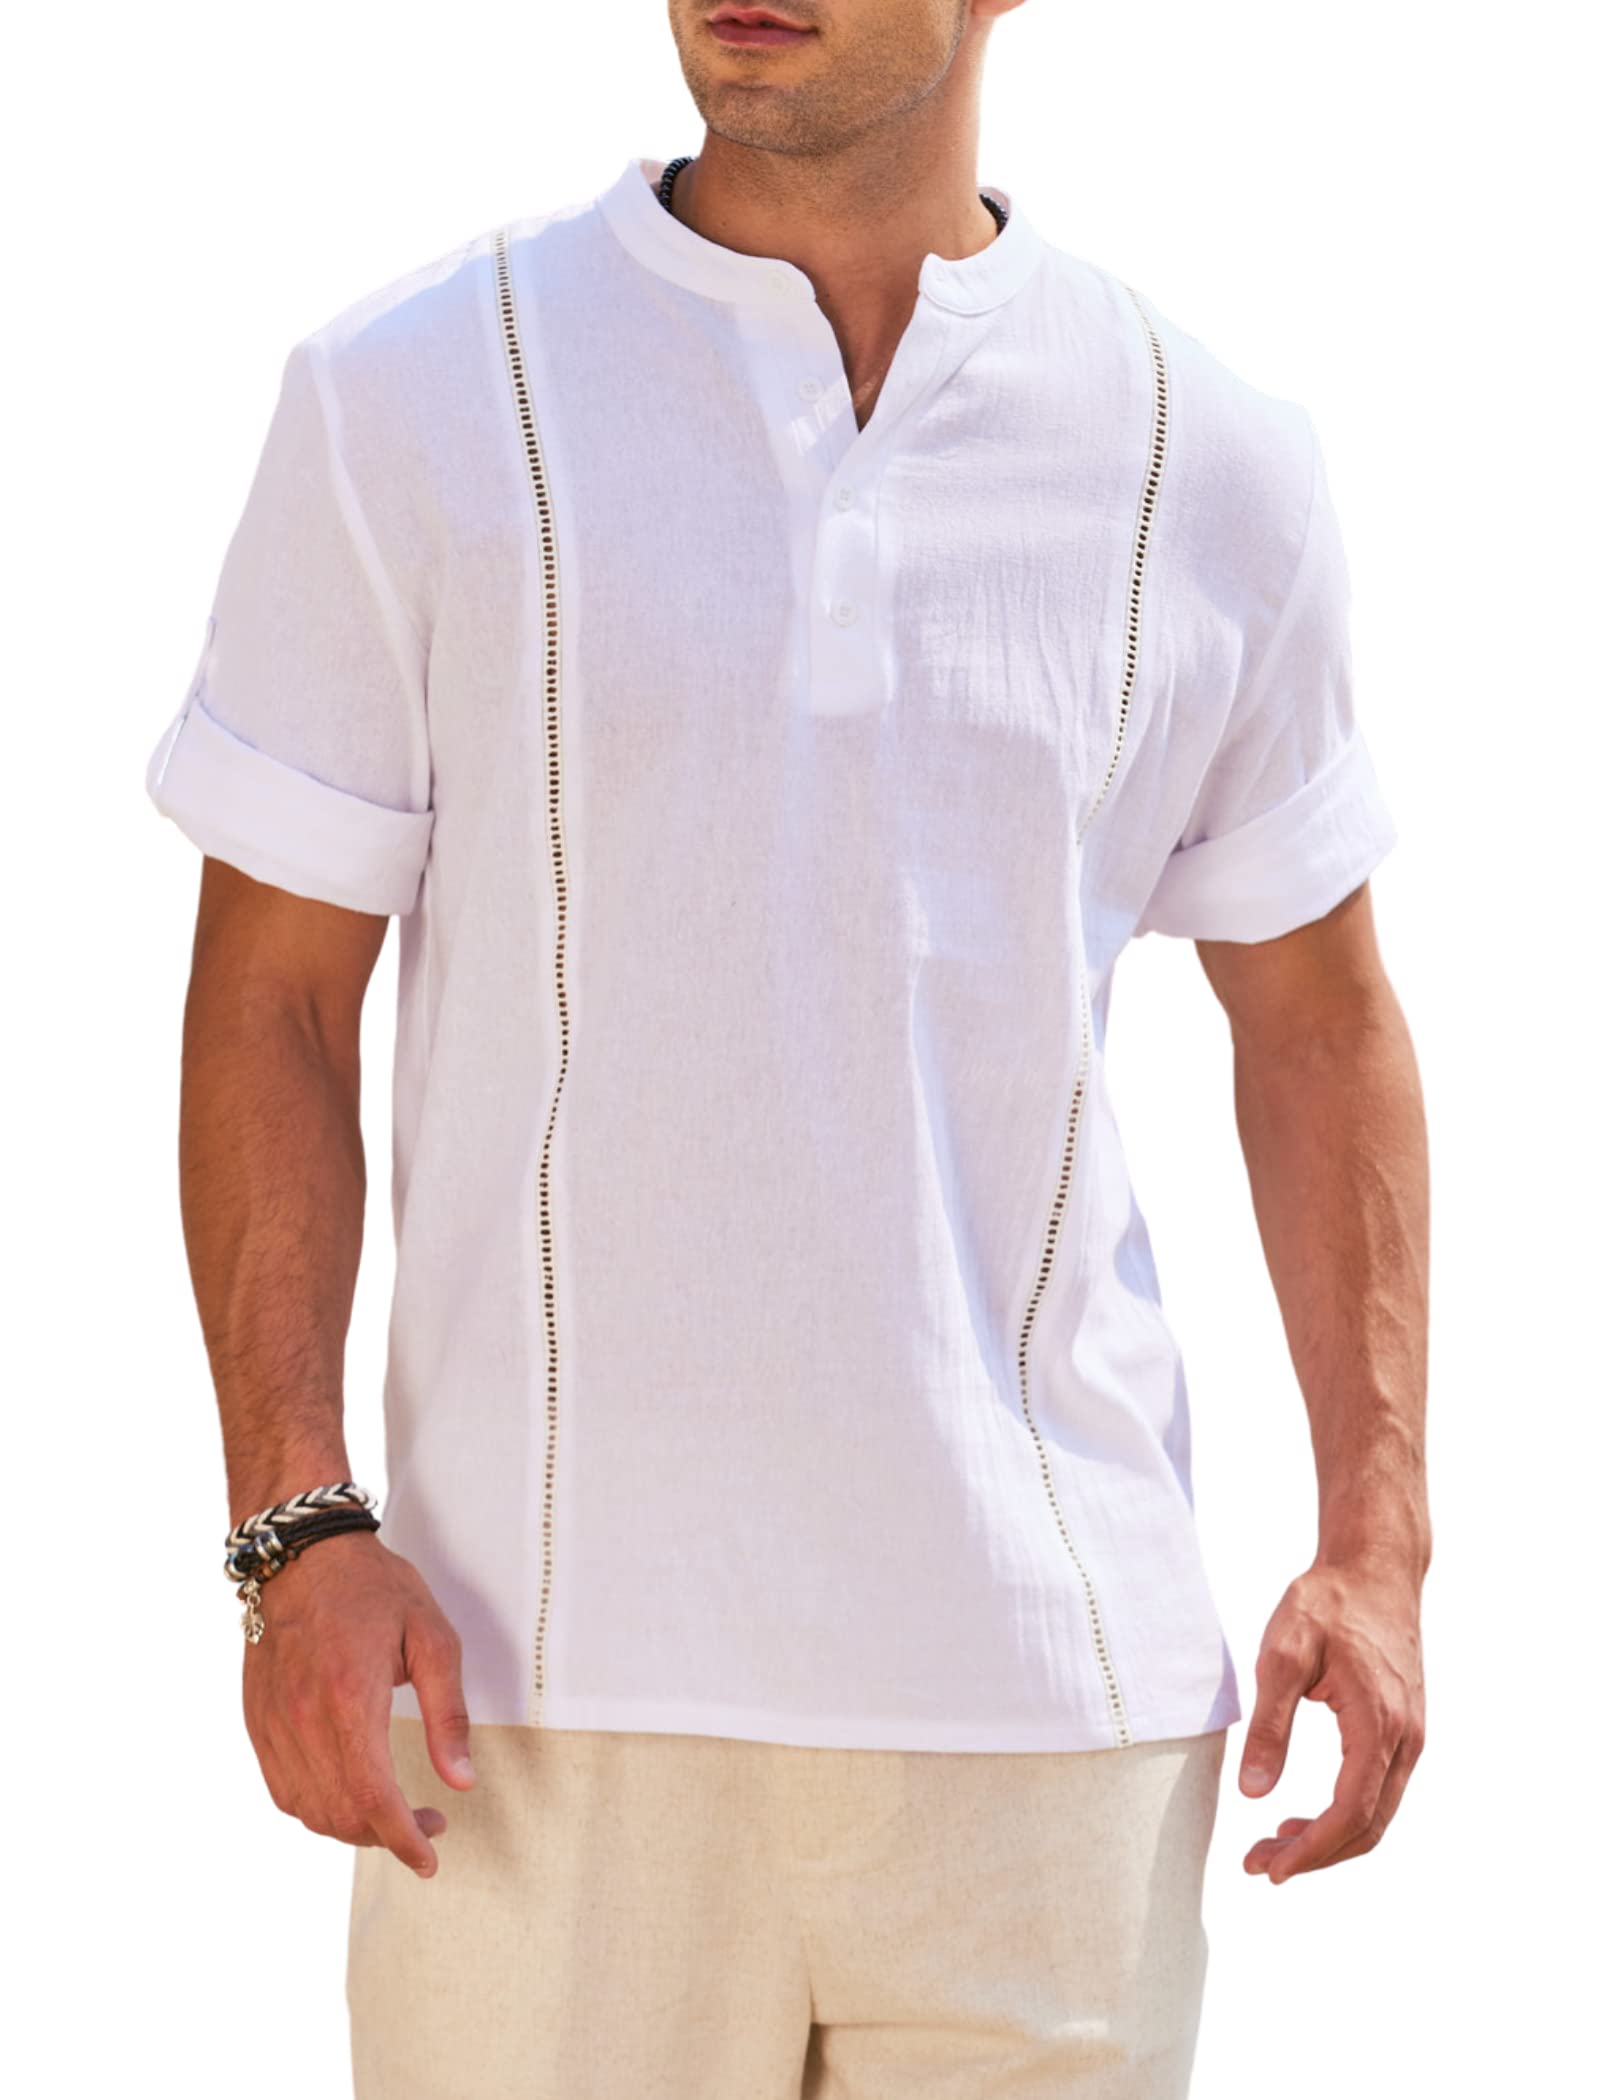 Deyeek Men's Linen Henley Shirts Short Sleeve Summer Beach Shirt